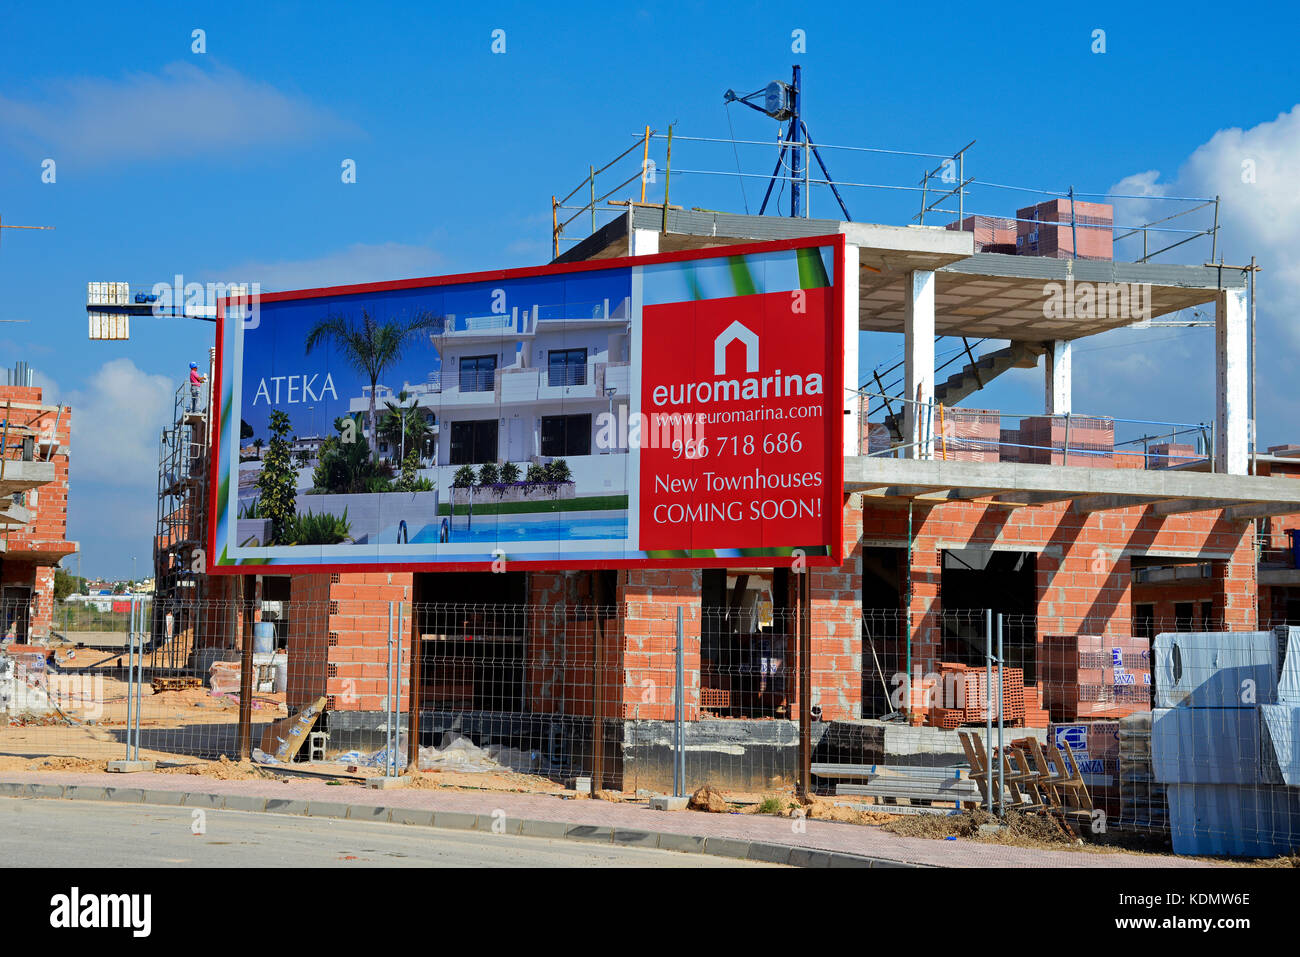 EUROMARINA Immobilienentwicklung Bauarbeiten in Dona Pepa, Ciudad Quesada, Spanien. Stadthäuser von Ateka Stockfoto